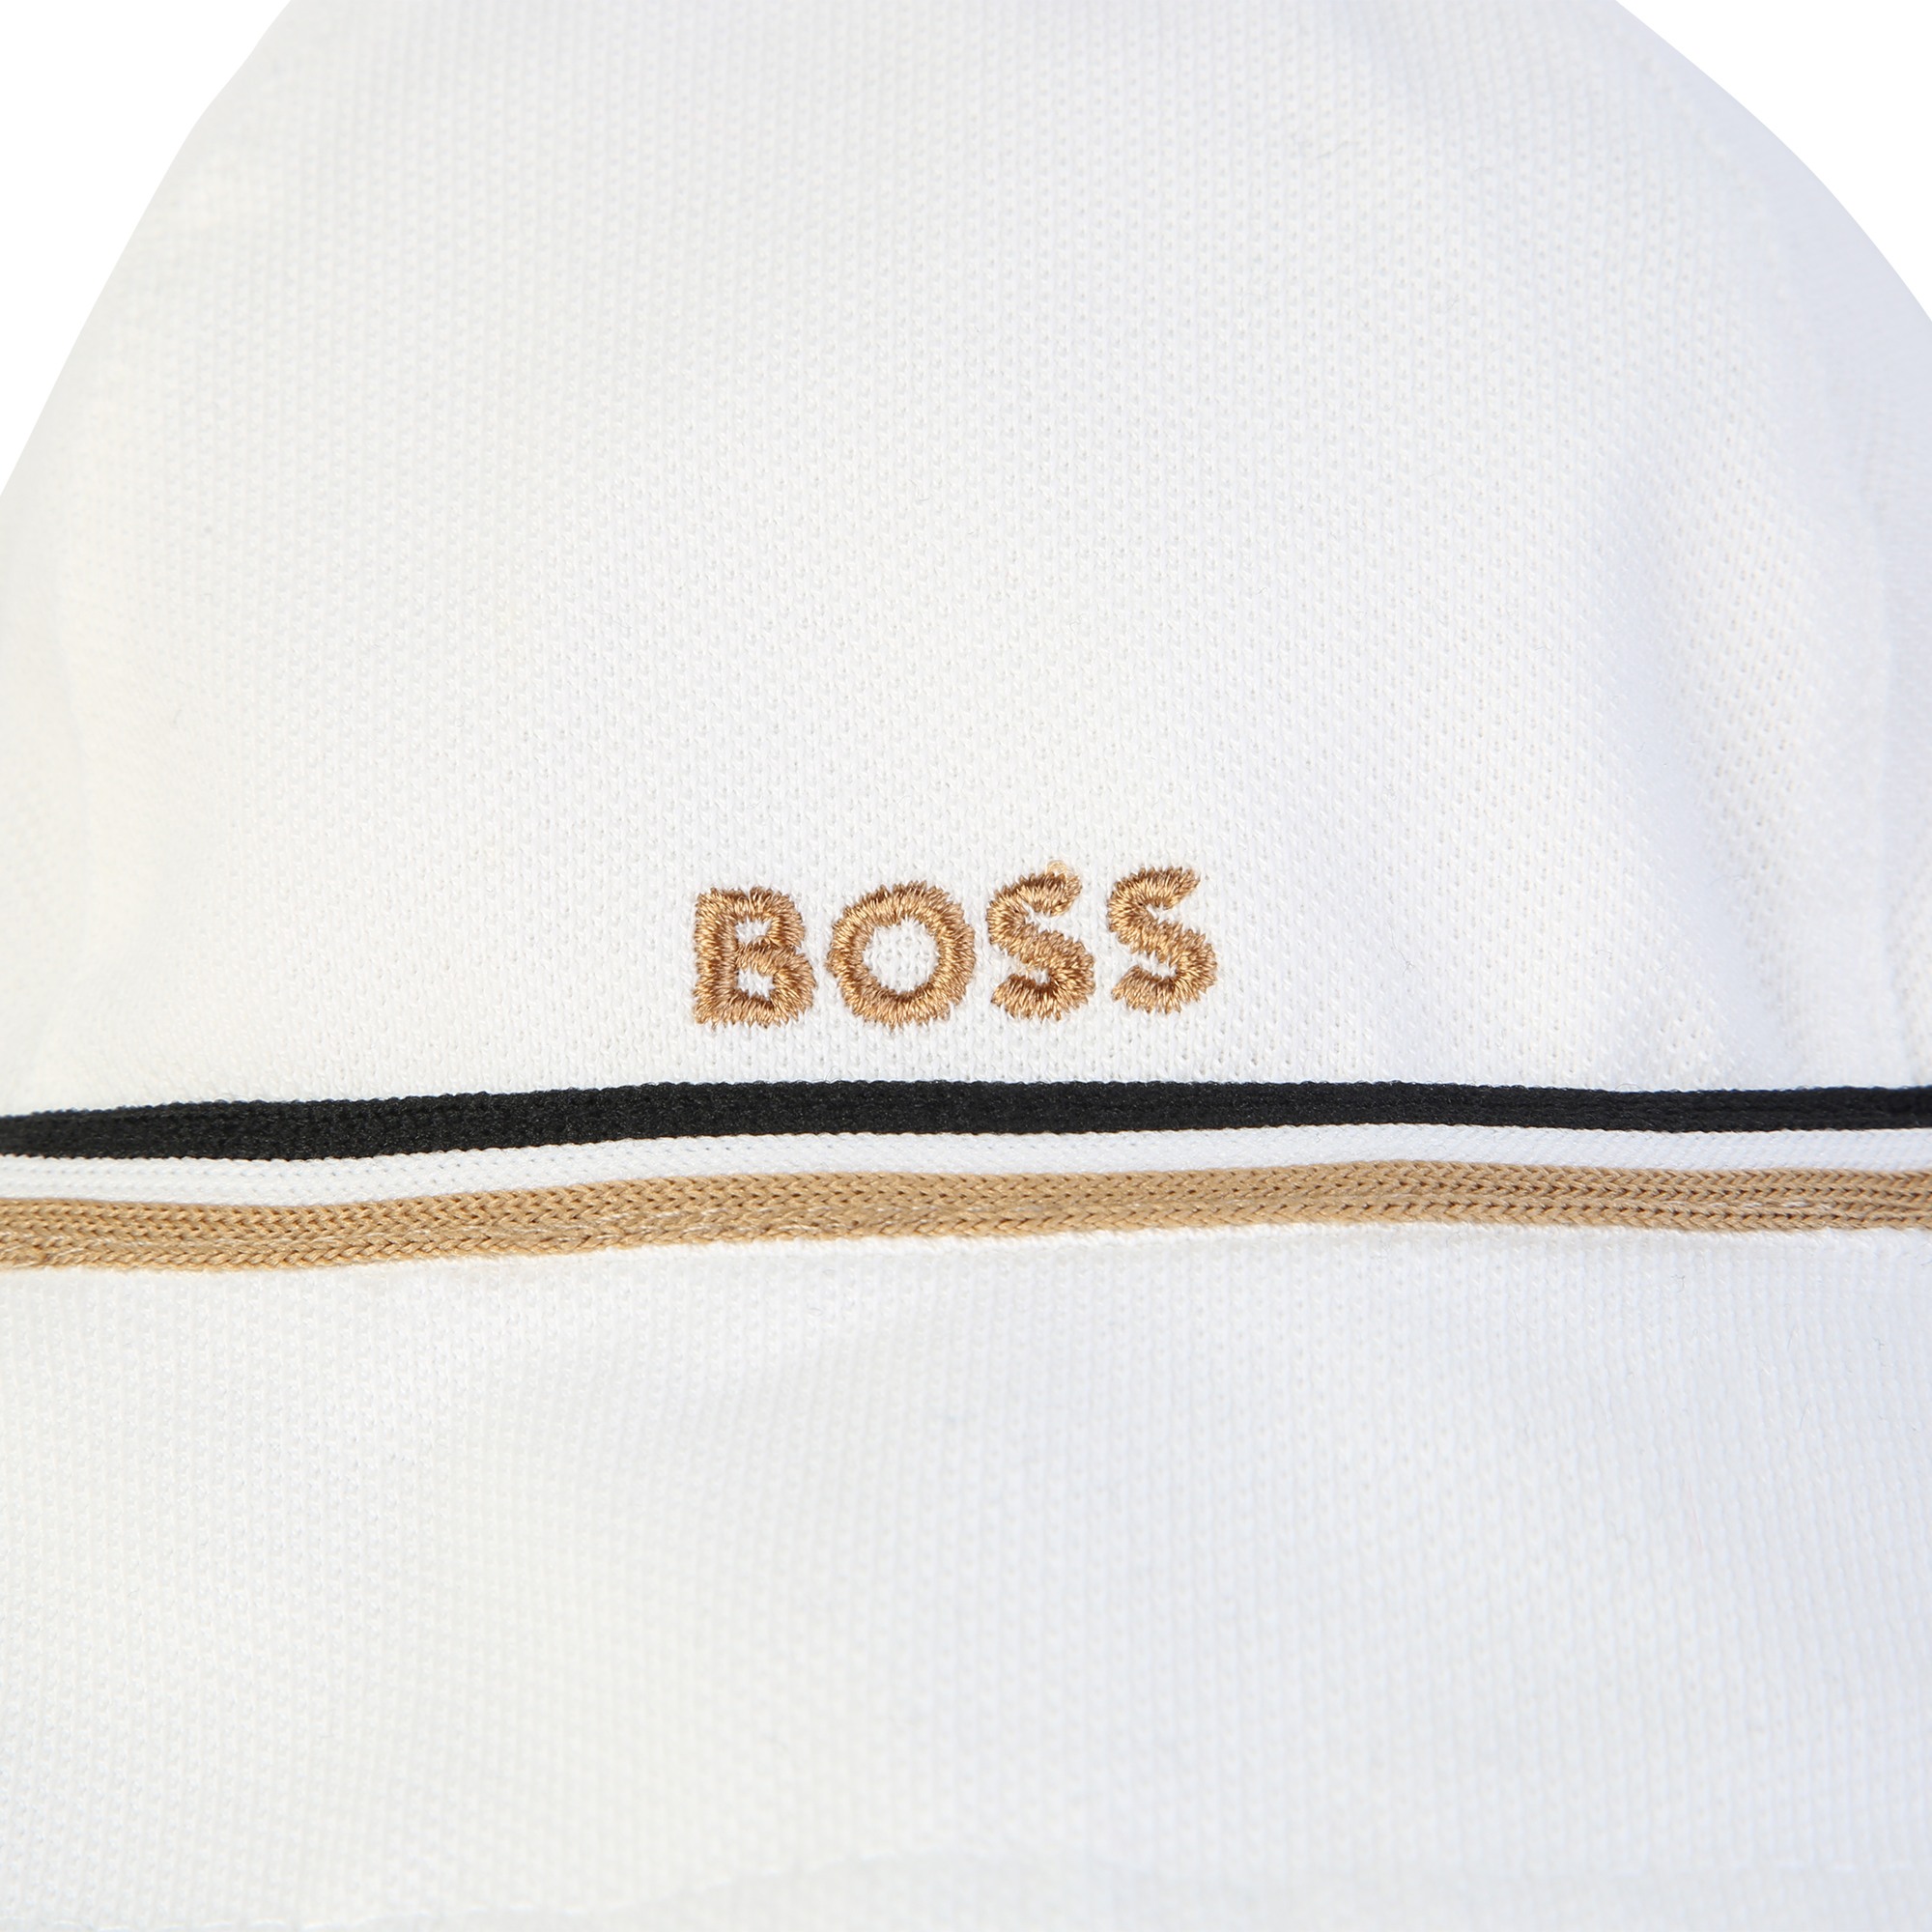 Cappello reversibile in cotone BOSS Per BAMBINA